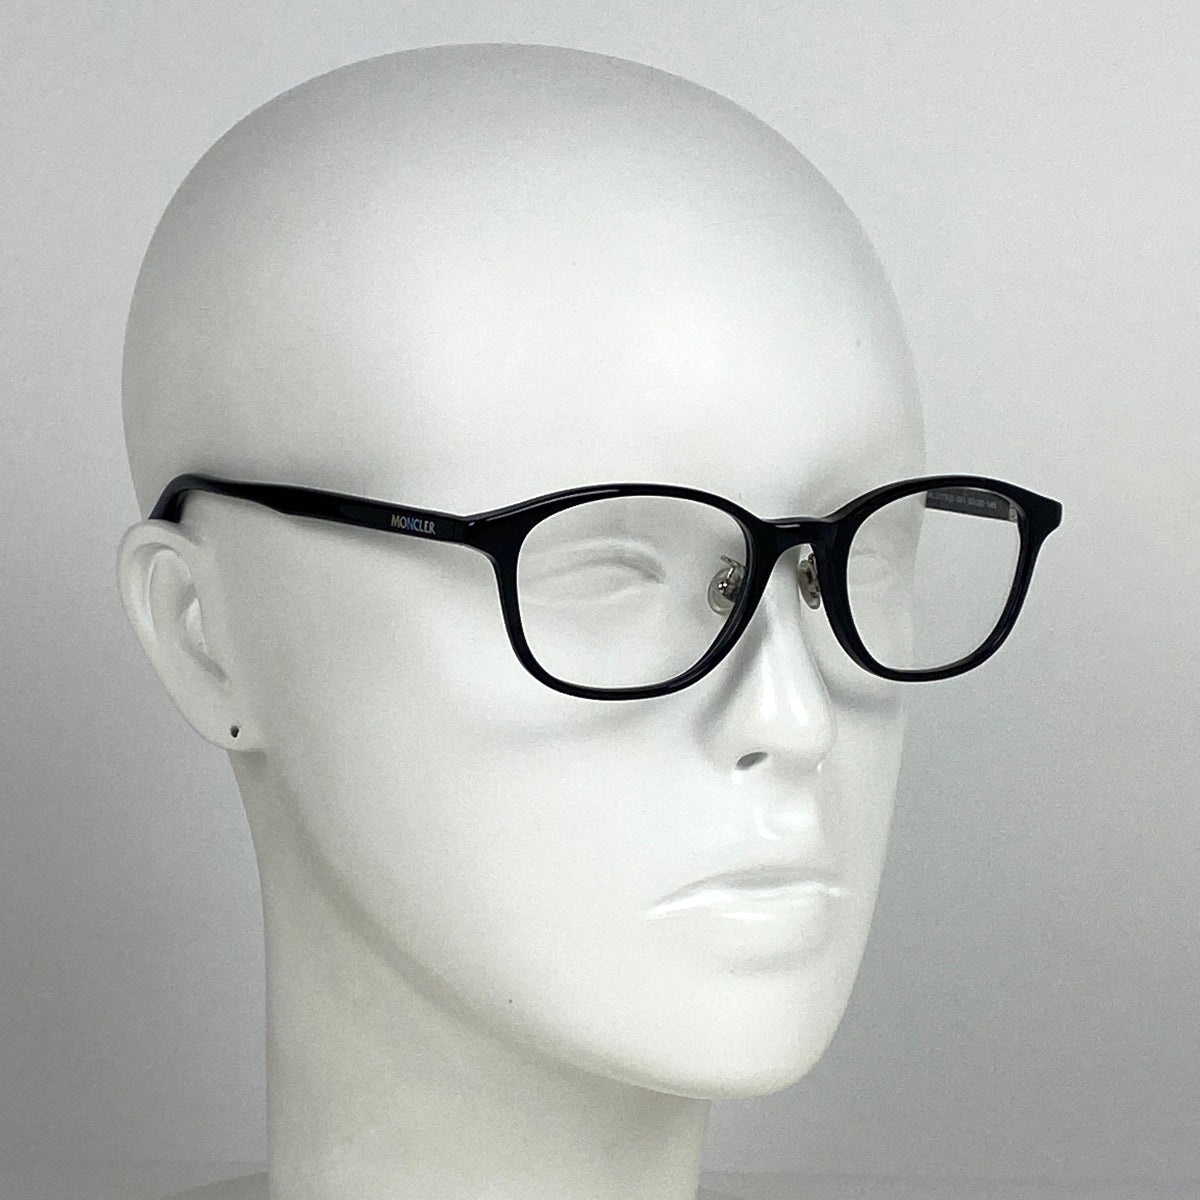 モンクレール ロゴ メガネ アイウェア 伊達メガネ 眼鏡 プラスチック ブラック 5173 レディース 【中古】 , ラッピング可